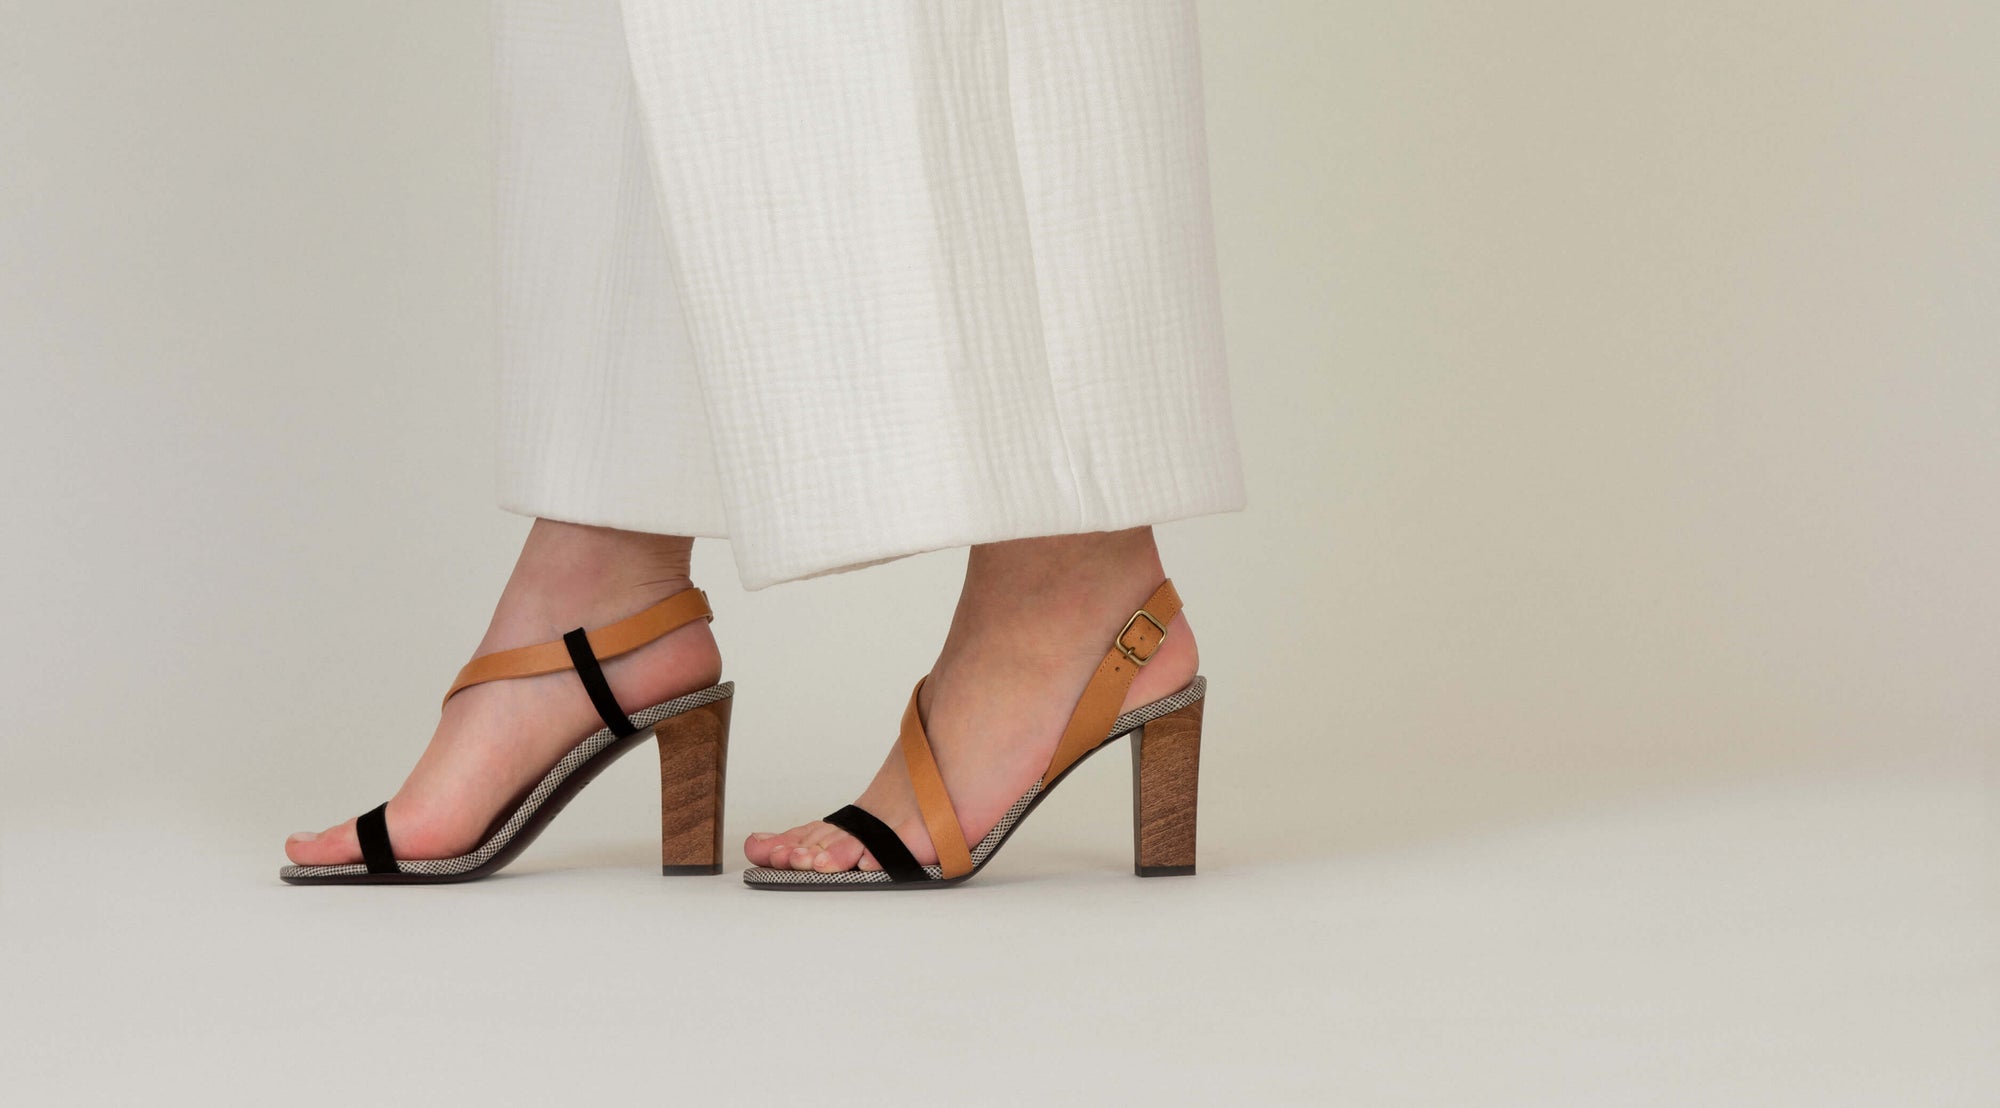 La sandale de jour N.004 sur talon de 8,5 cm est une sandale d'été femme élégante aux couleurs sobres et intemporelles - La Ligne Numérotée 